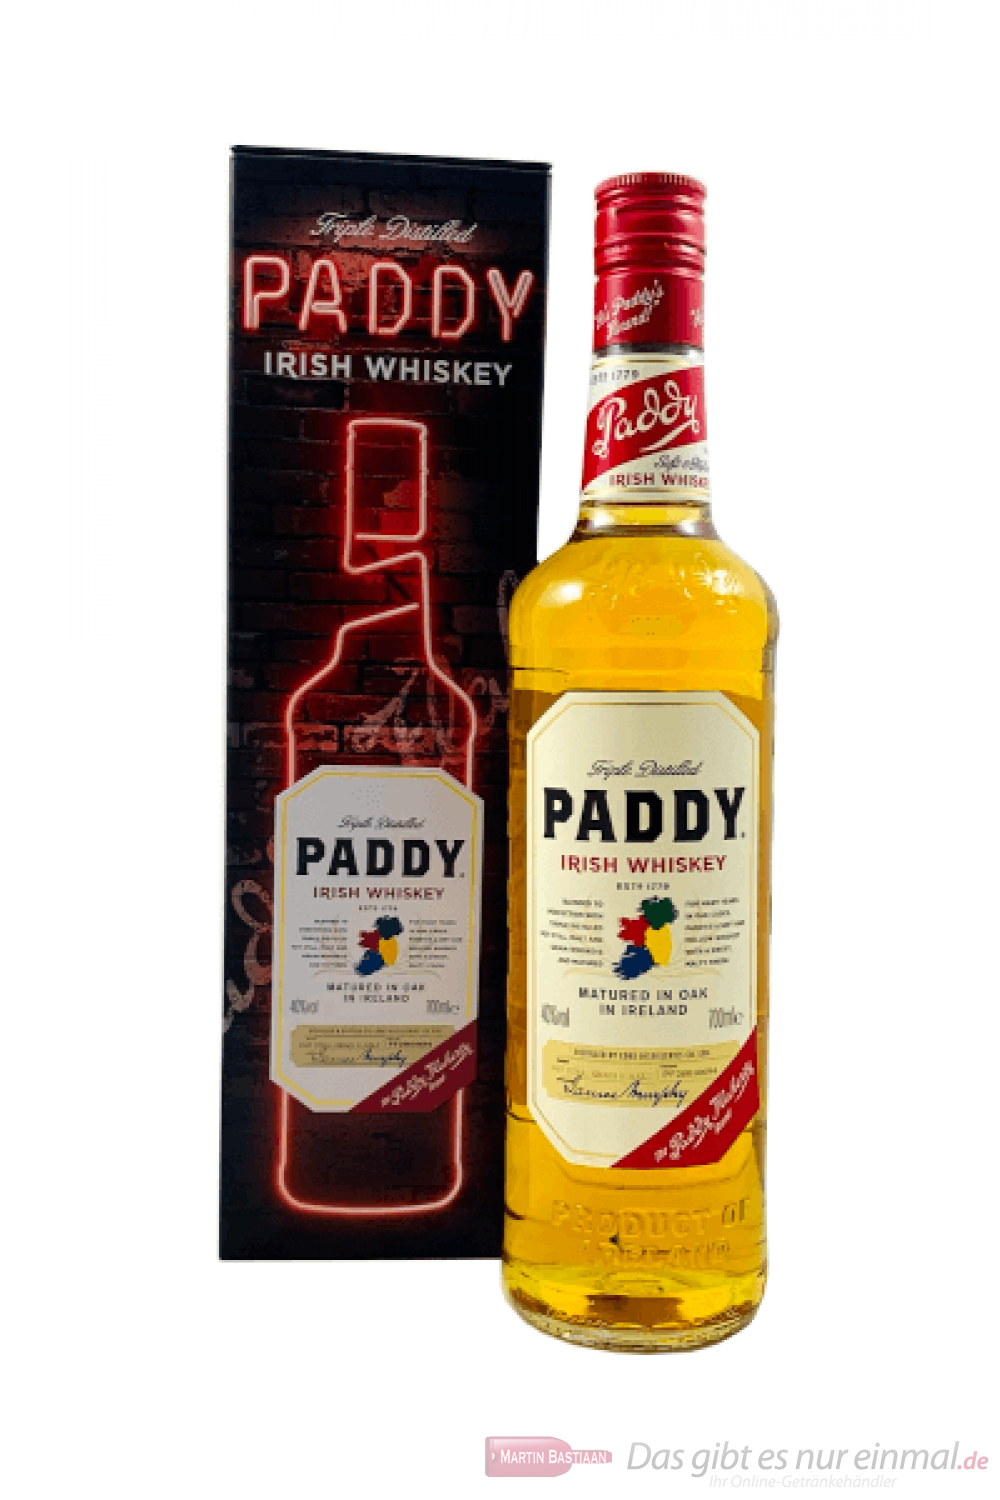 Paddy in Tinbox Irish Whiskey 0,7l